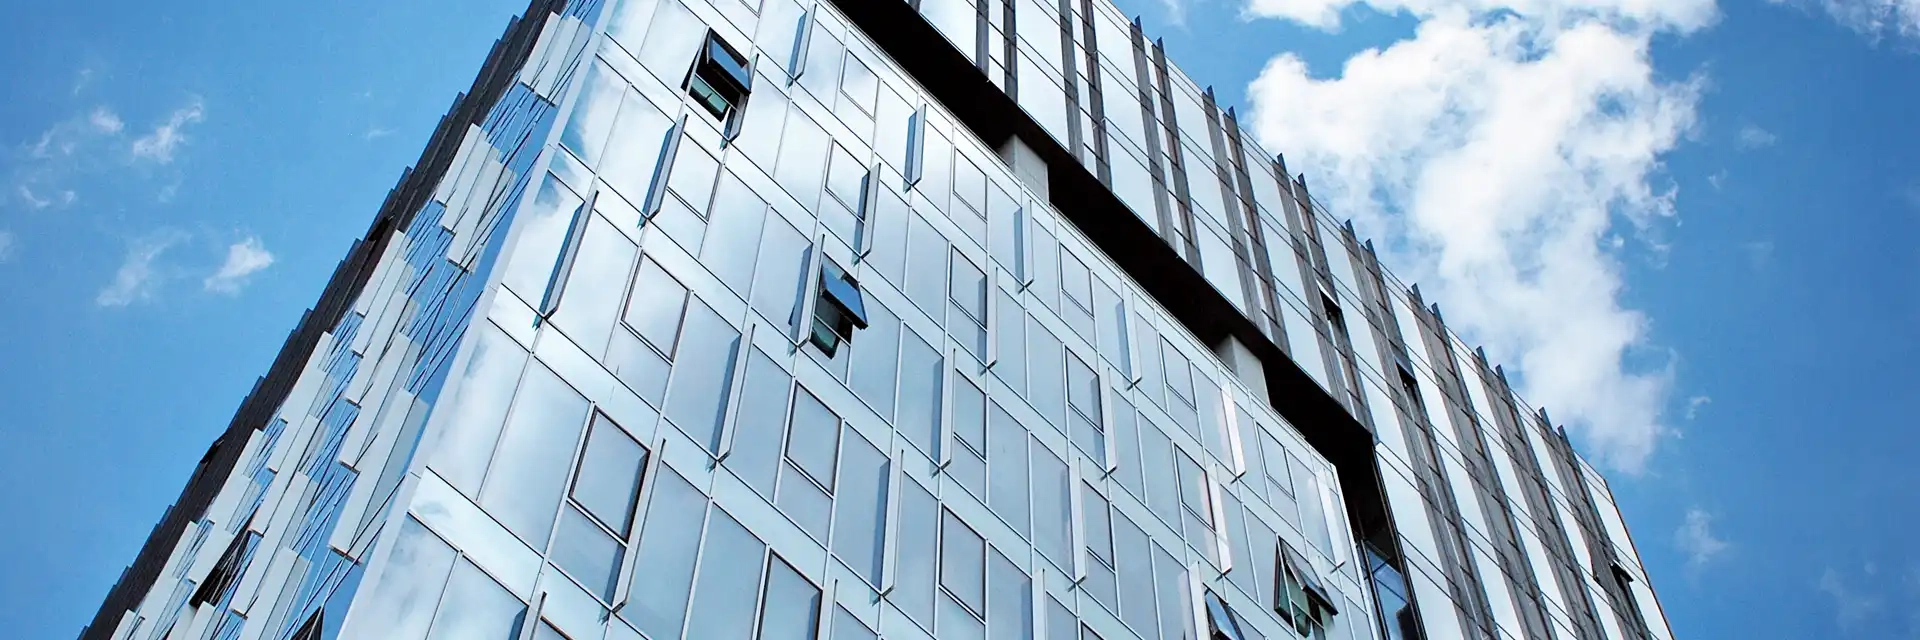 VFE, Über uns, Bürogebäude mit gekippten Fenstern